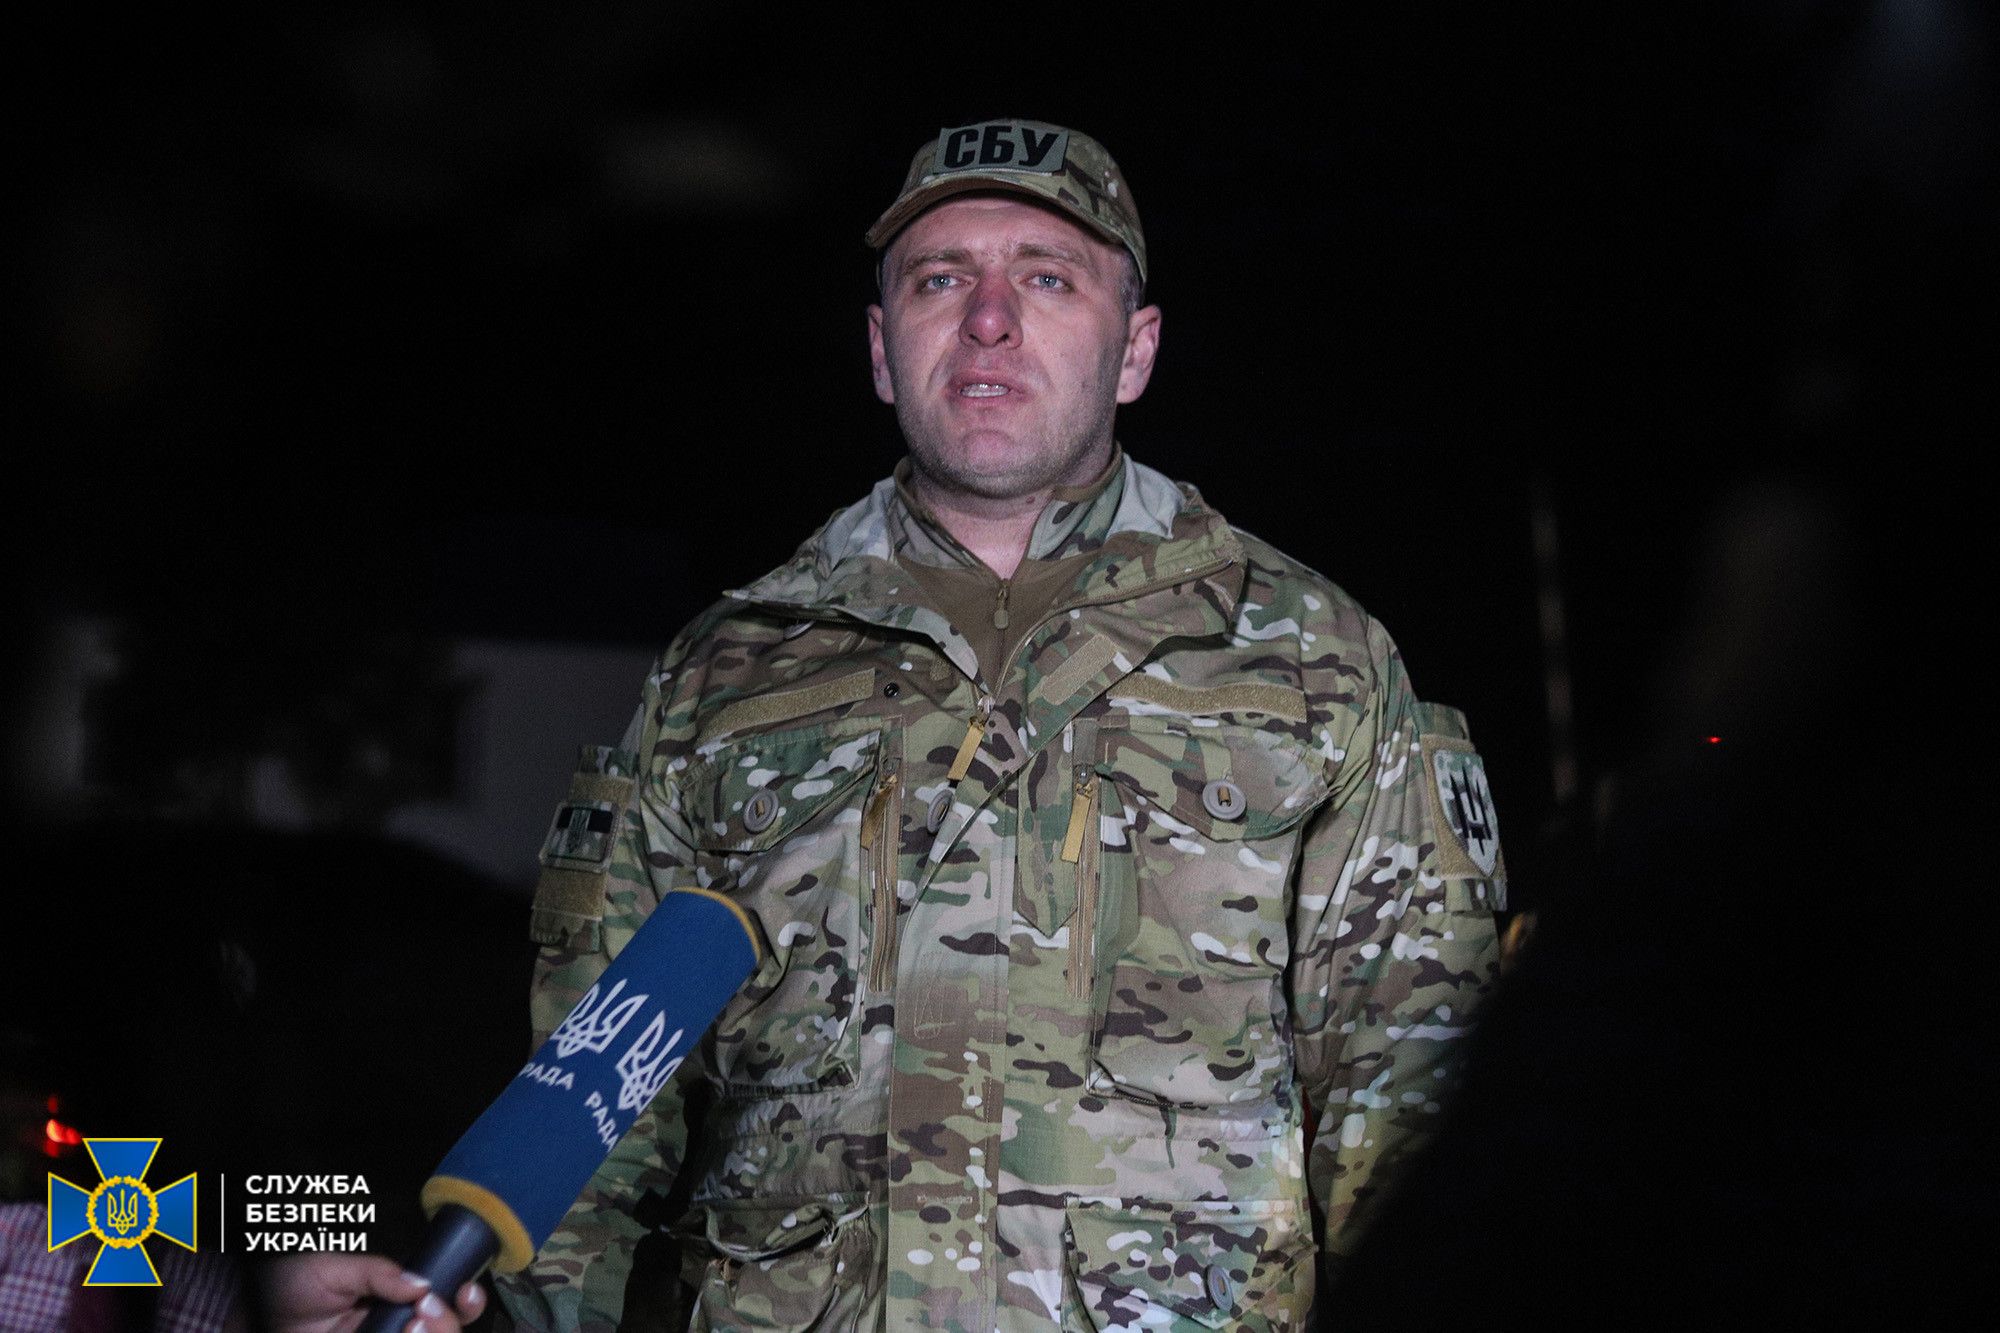 Експерт: Захід отримує від СБУ сигнали, які можуть посилити військову підтримку України